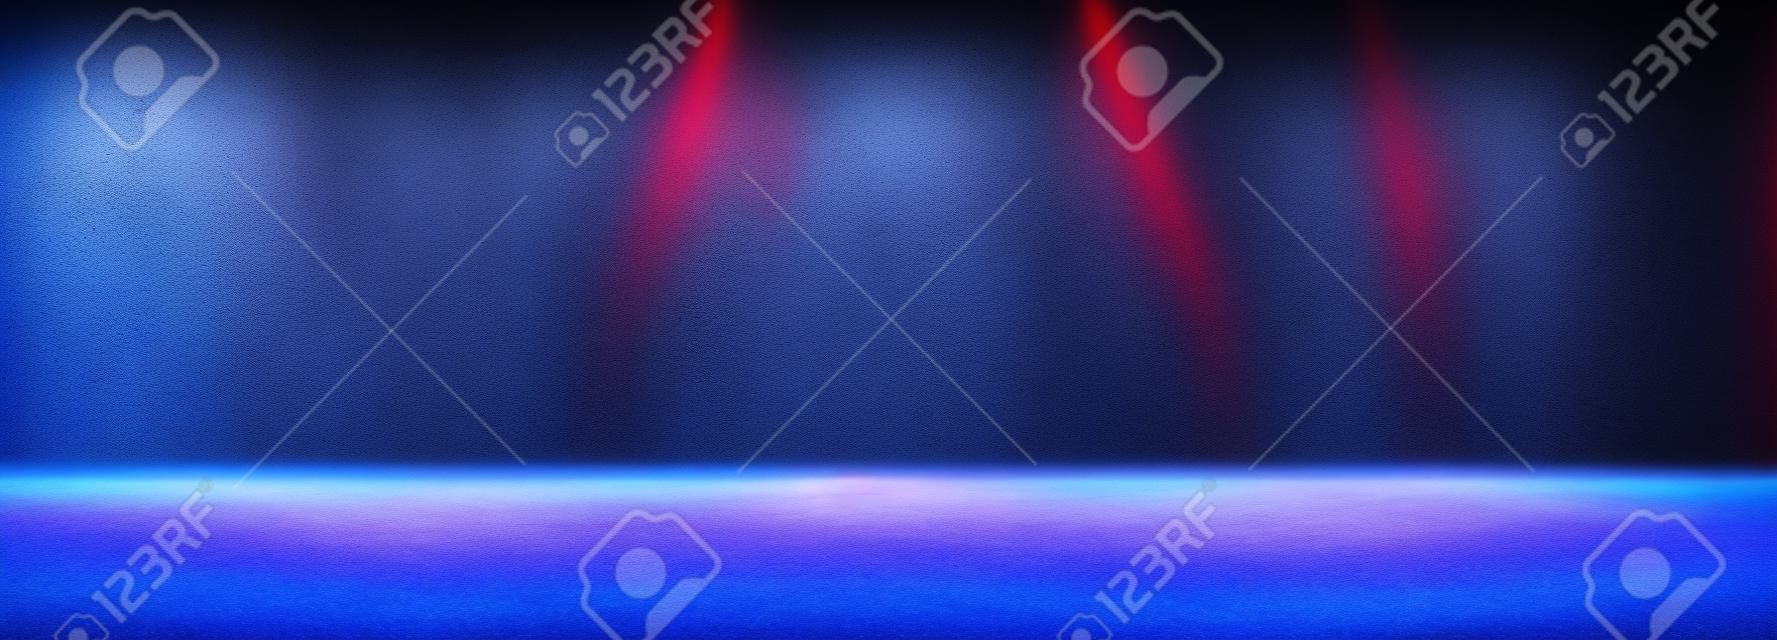 Lege ruimte van Studio donkere kamer met mist of mist en verlichting effect rood en blauw op beton vloer helling achtergrond.